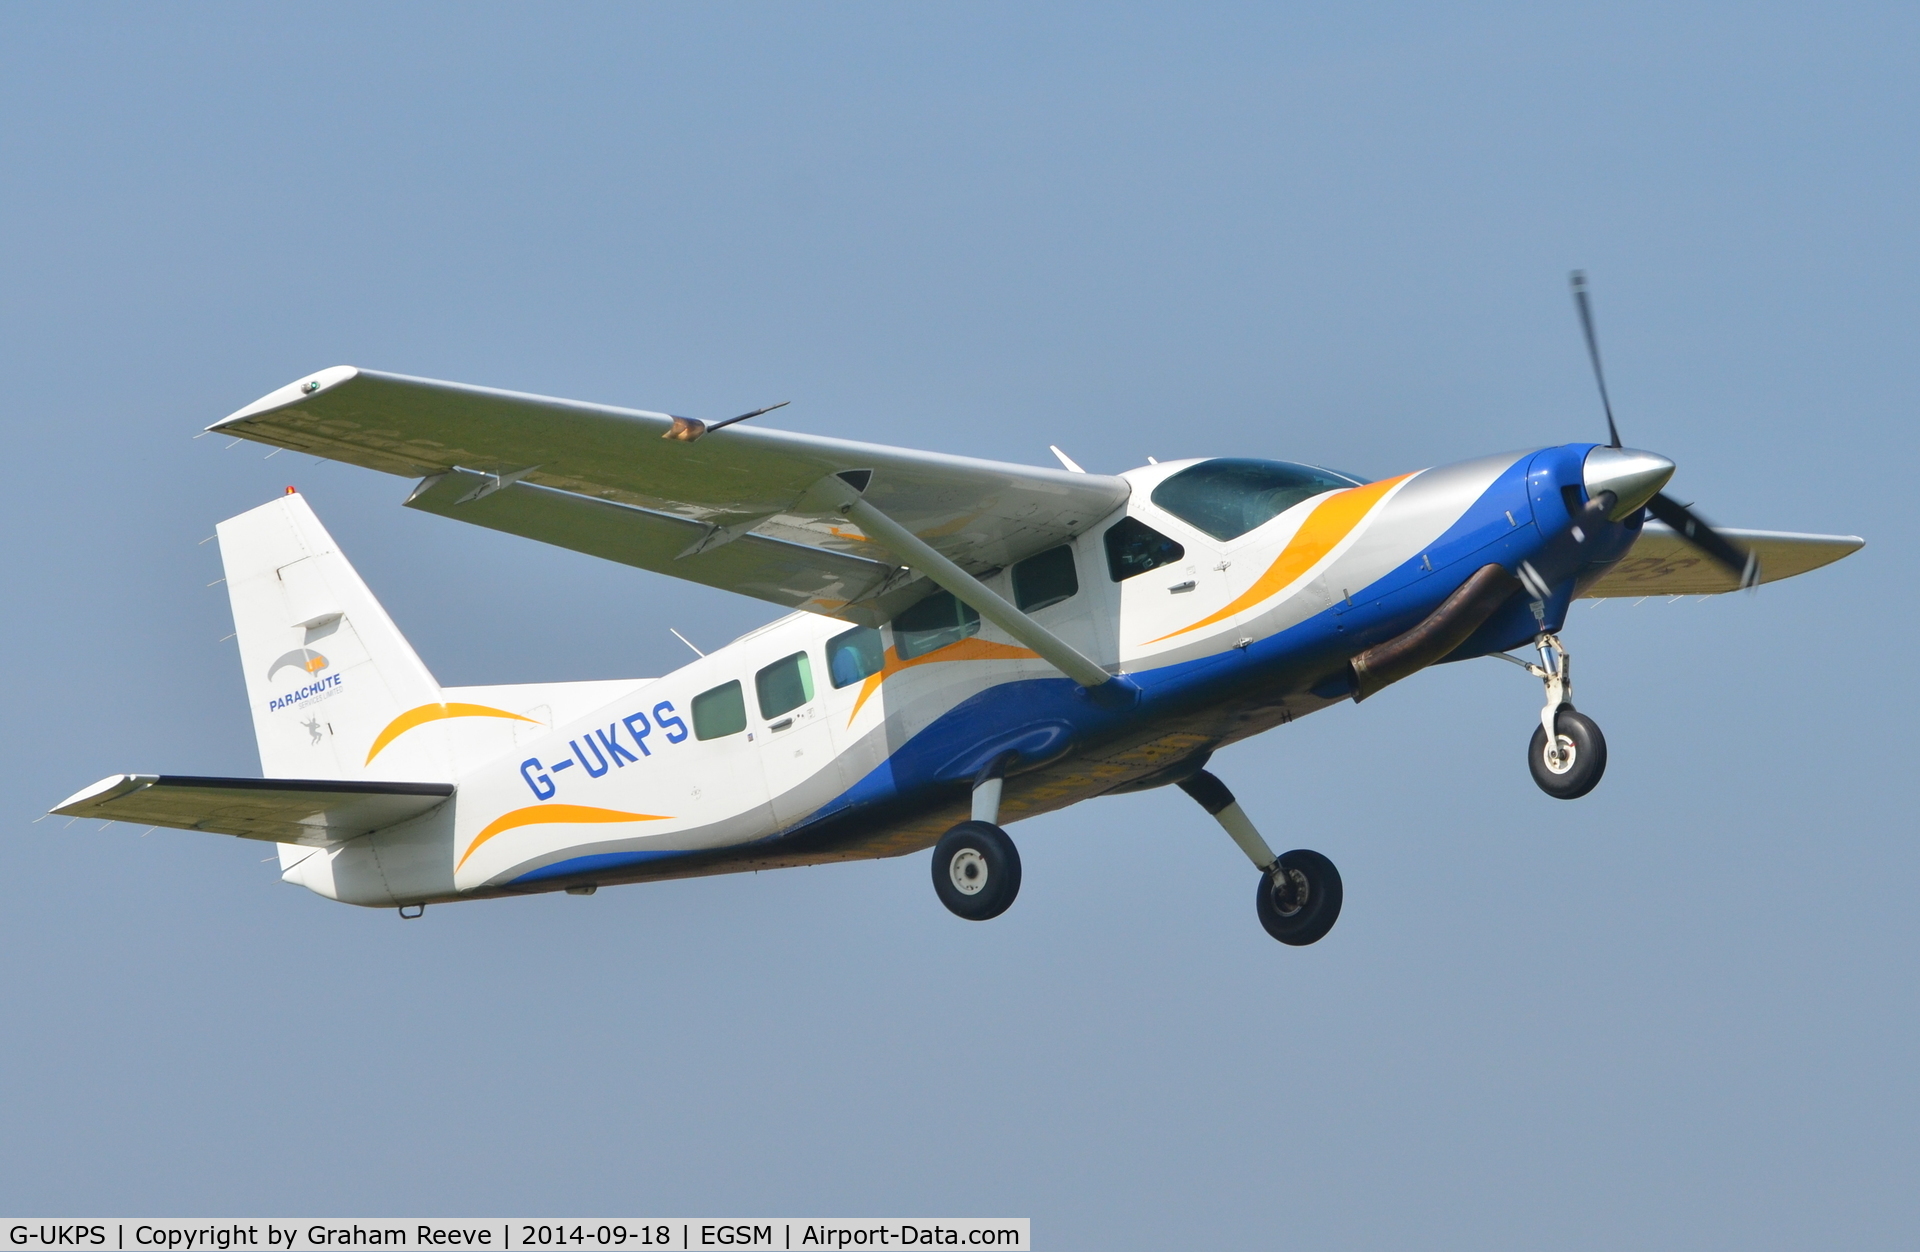 G-UKPS, 2007 Cessna 208 Caravan 1 C/N 20800423, Departing from Beccles.